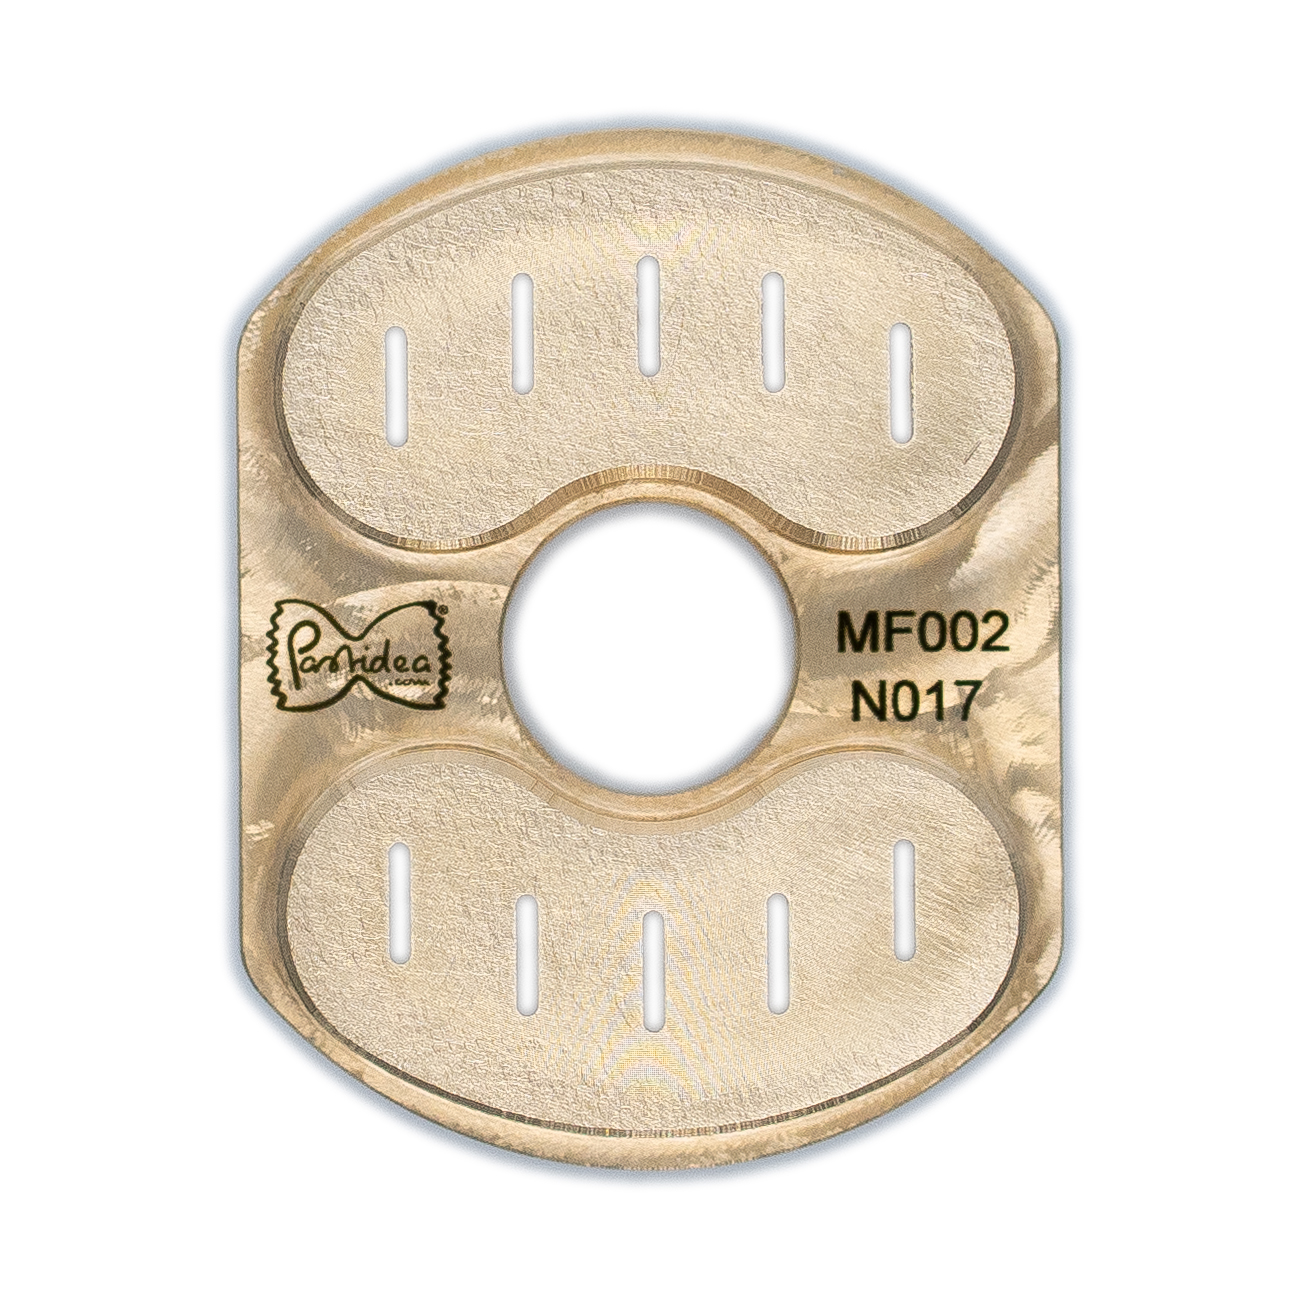 pasta einsatz (typ 2) in bronze tagliatelle 6mm für philips pasta maker avance / 7000 series (einsatzhalter erforderlich)